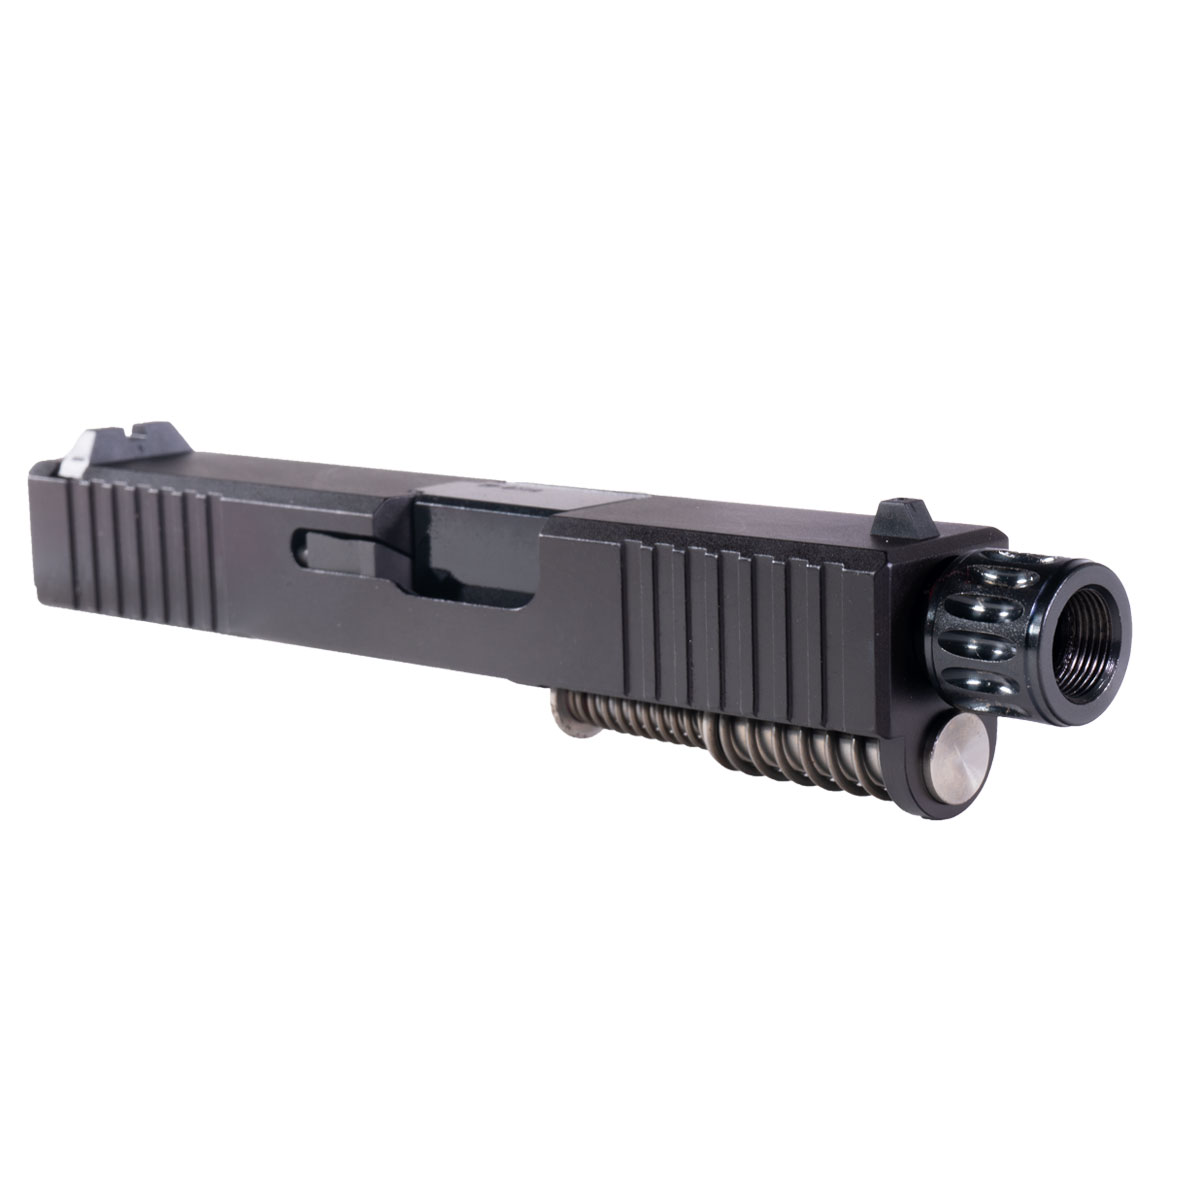 MMC 'Snub Nose' 9mm Complete Slide Kit - Glock 26 Gen 1-2 Compatible